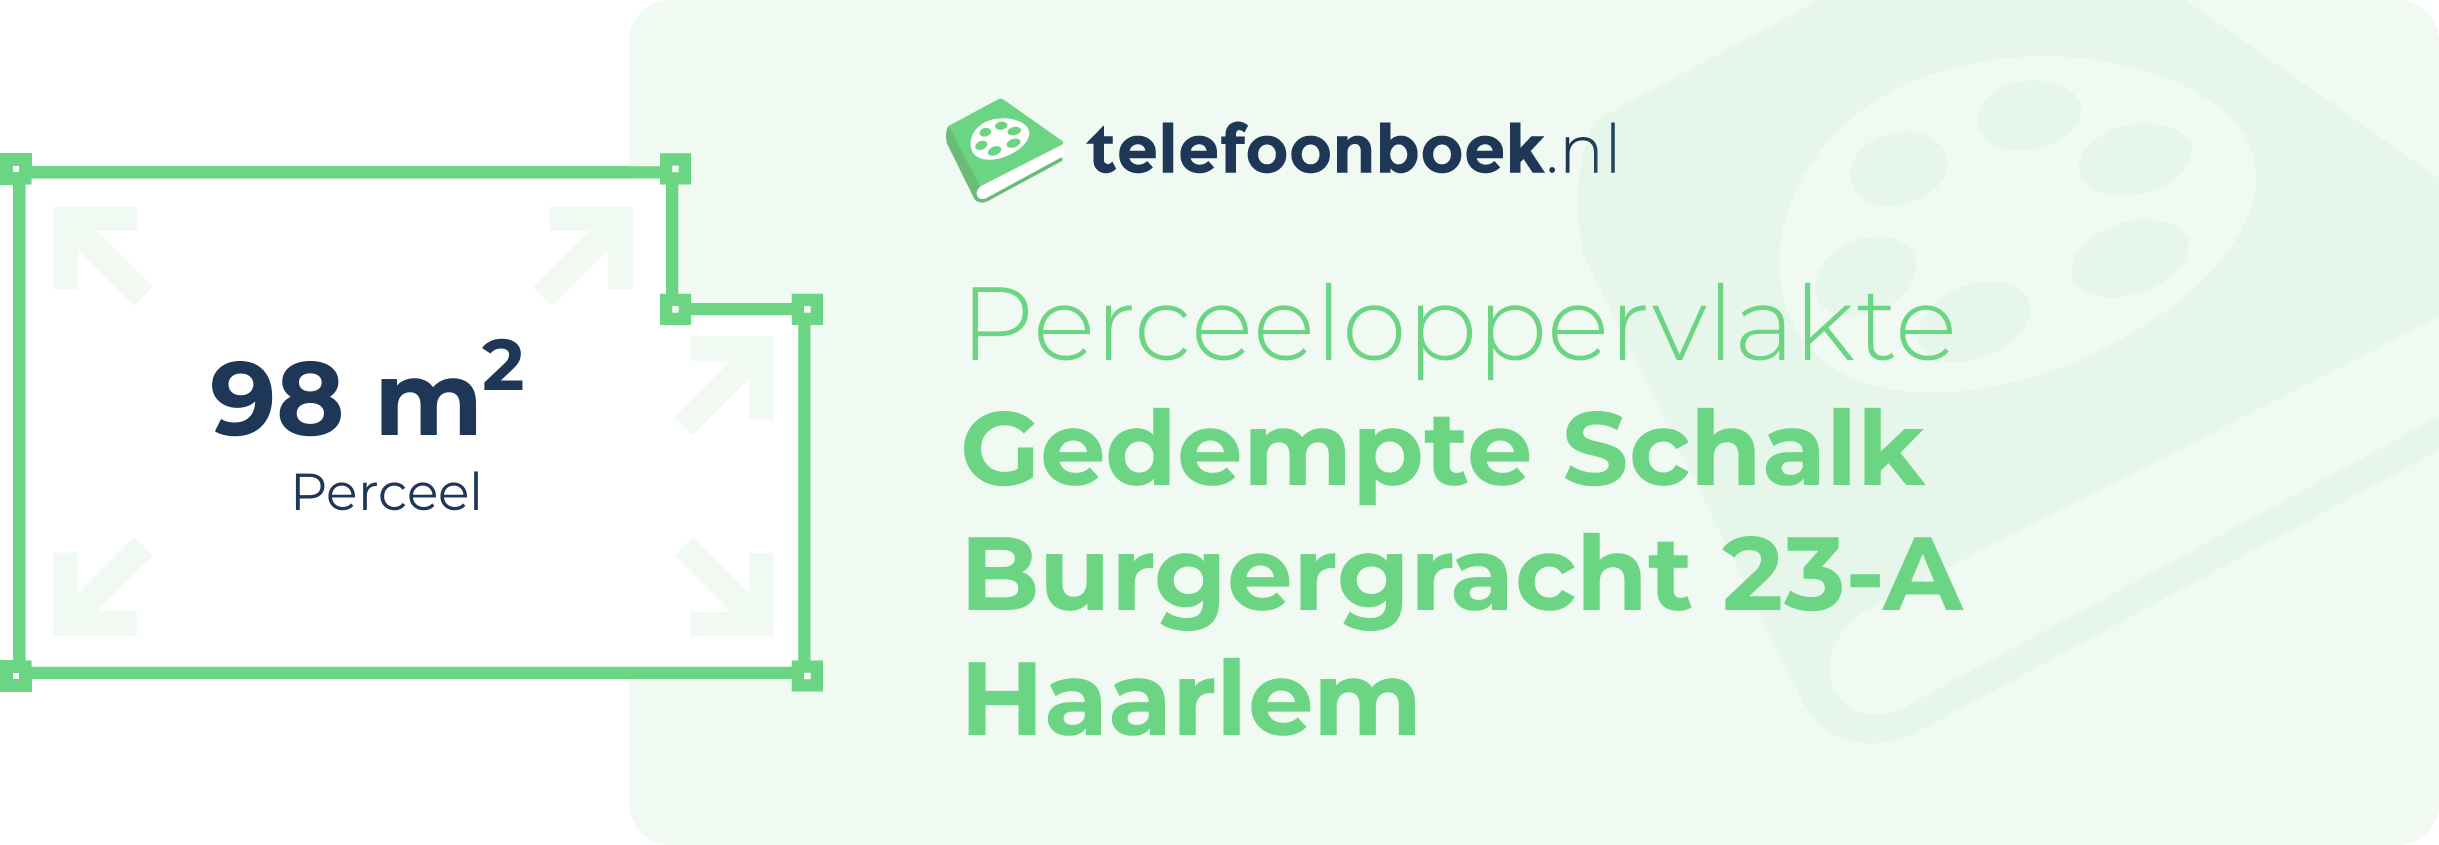 Perceeloppervlakte Gedempte Schalk Burgergracht 23-A Haarlem